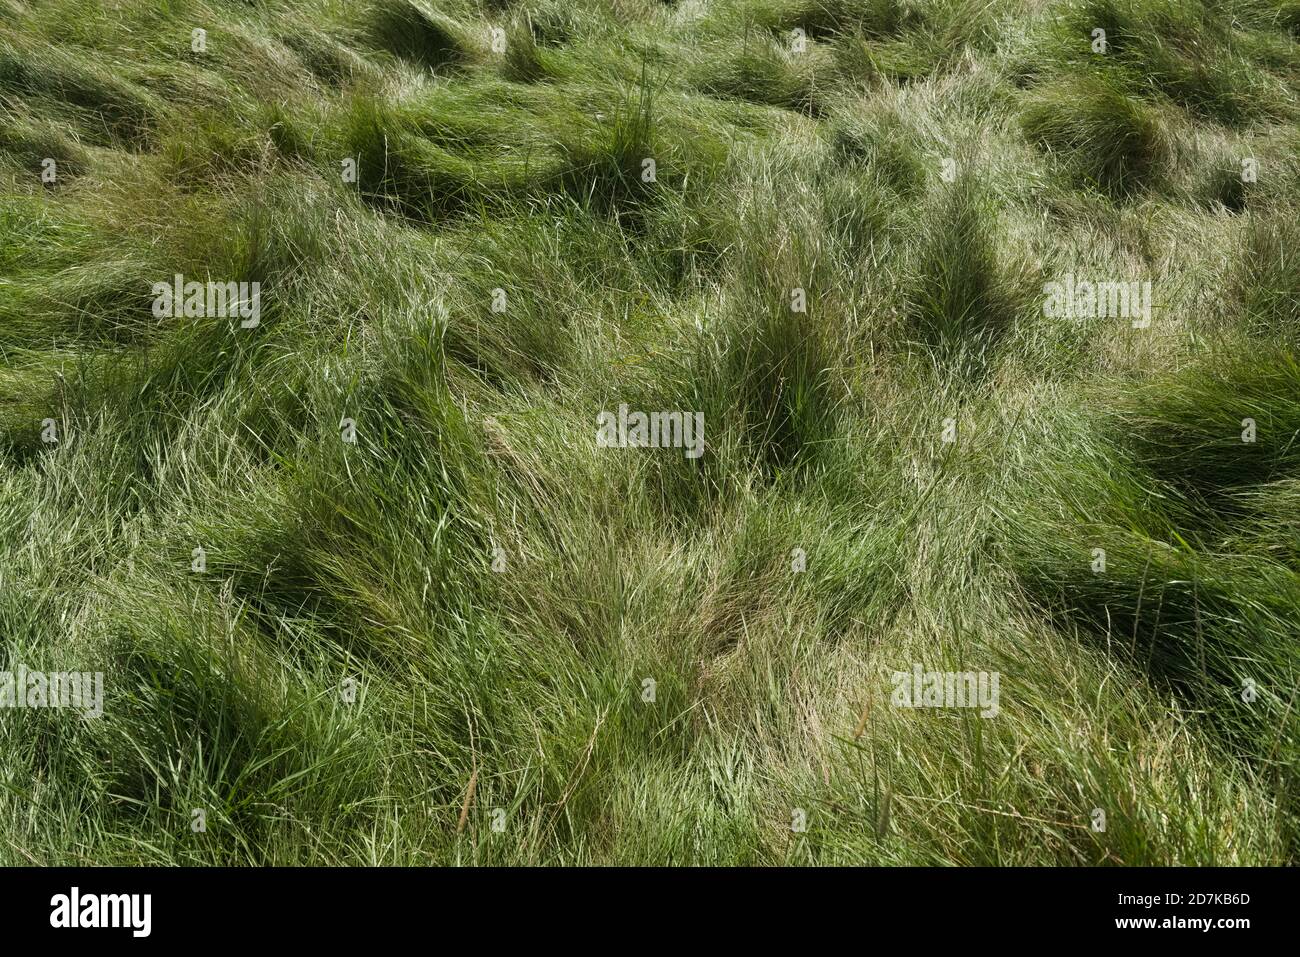 3 - fond naturel Uni de vert long herbe de prairie luxuriante. Aplati et trodden, touffé dans le modèle, probablement à cause du vent aussi. Jour ensoleillé Banque D'Images